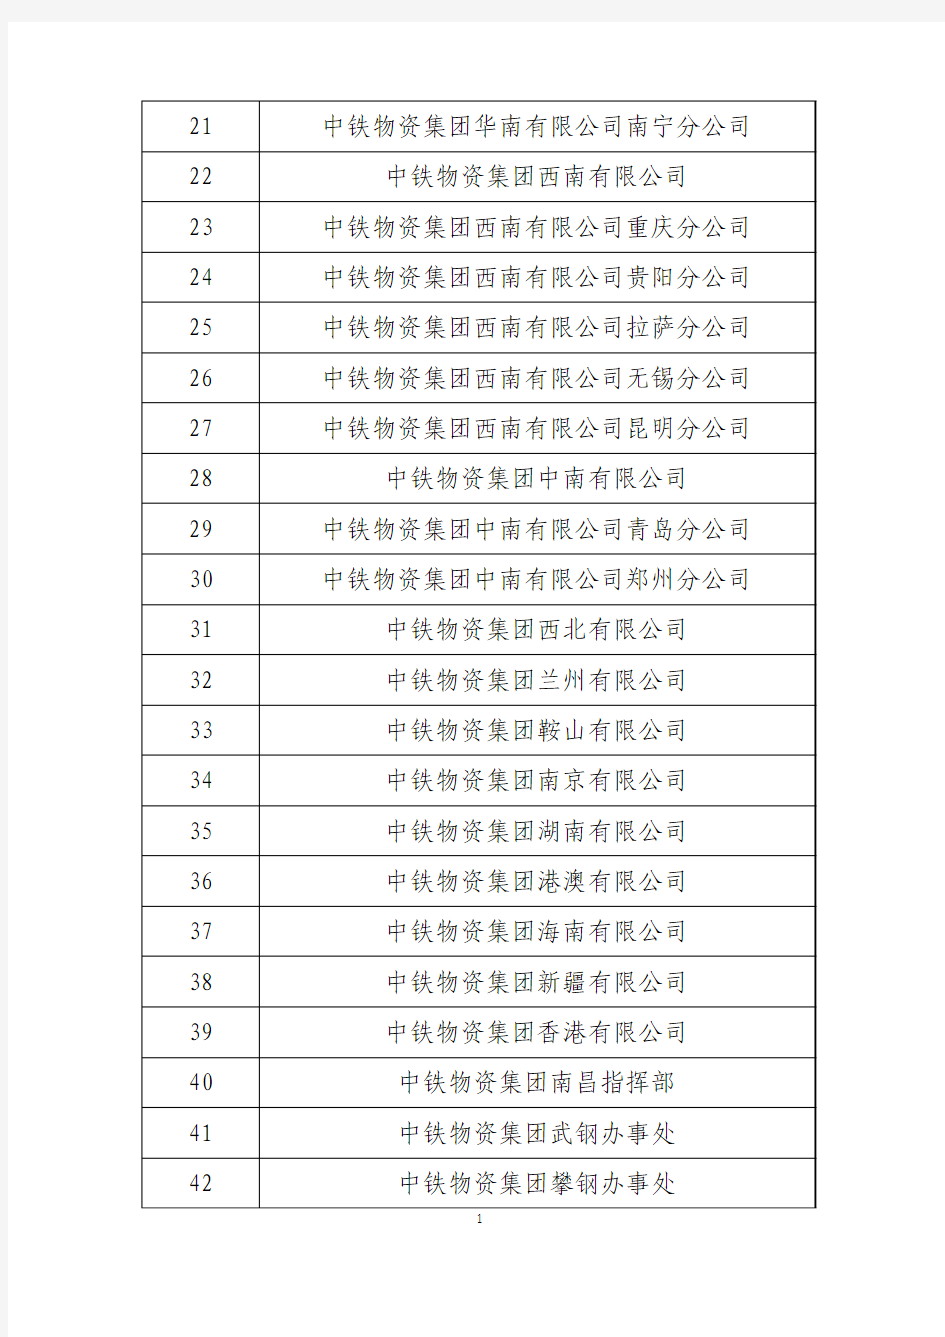 中铁物资集团有限公司及其下属单位名单